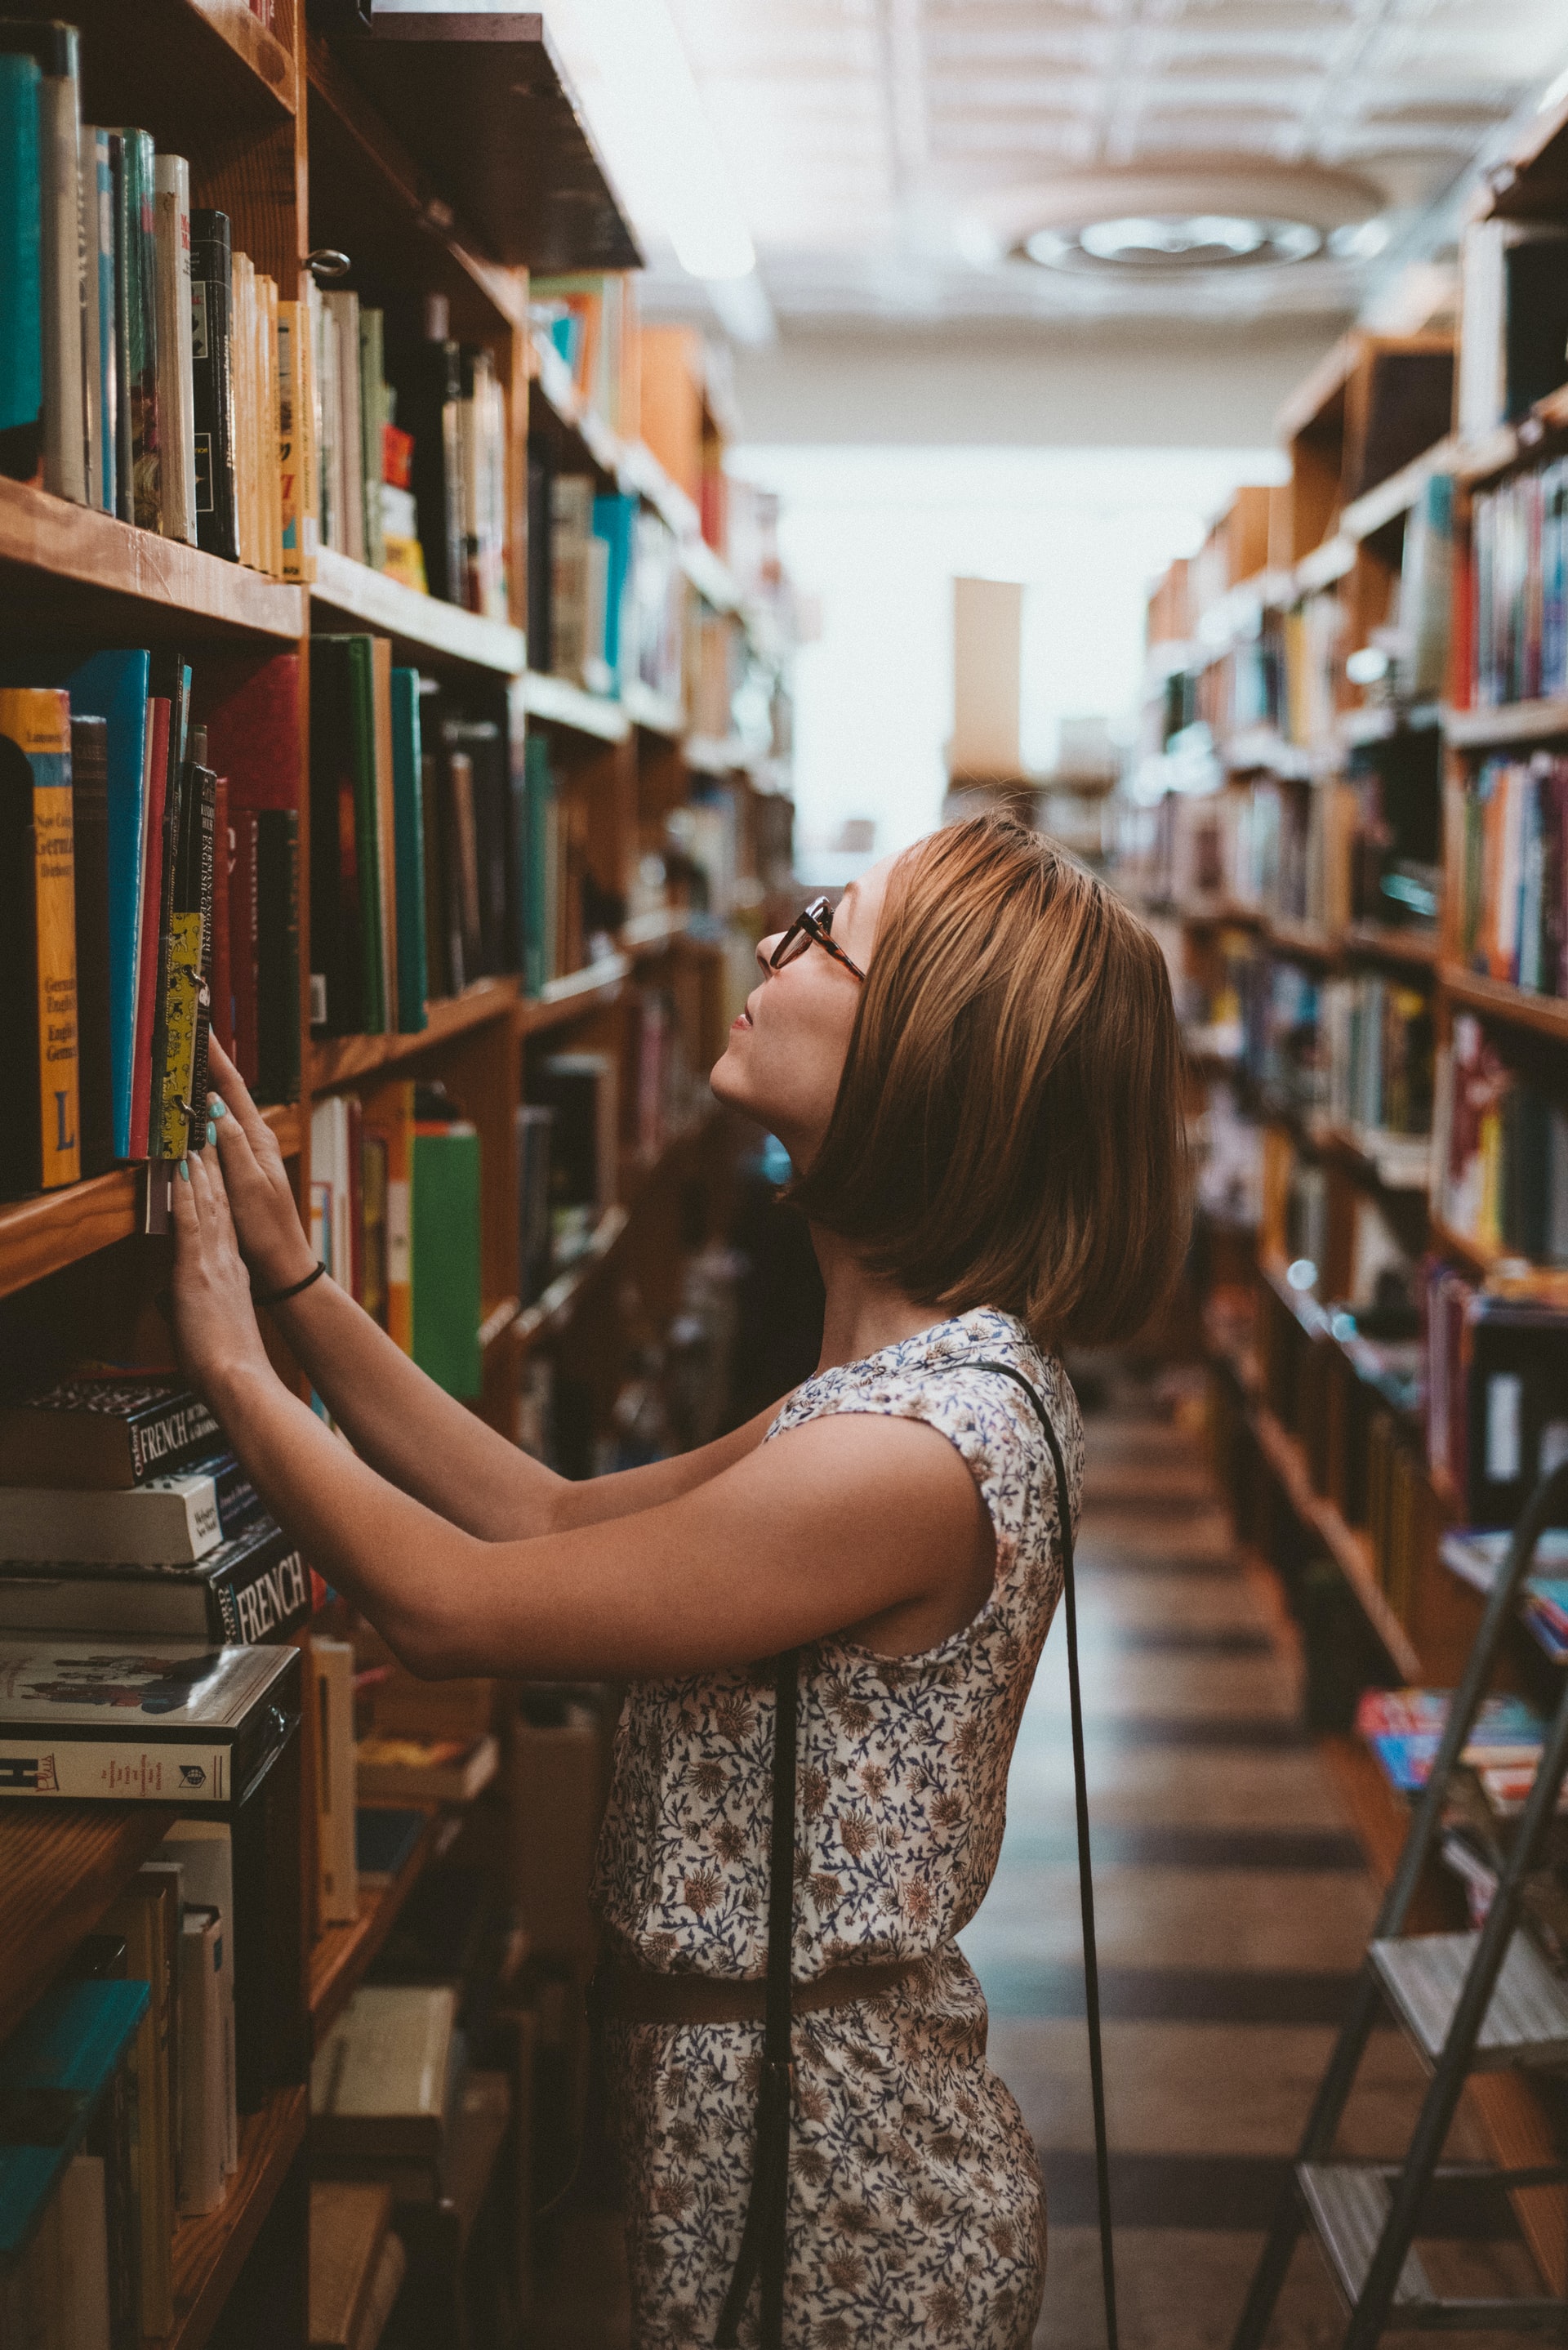  Femme regardant des livres dans une bibliothèque 